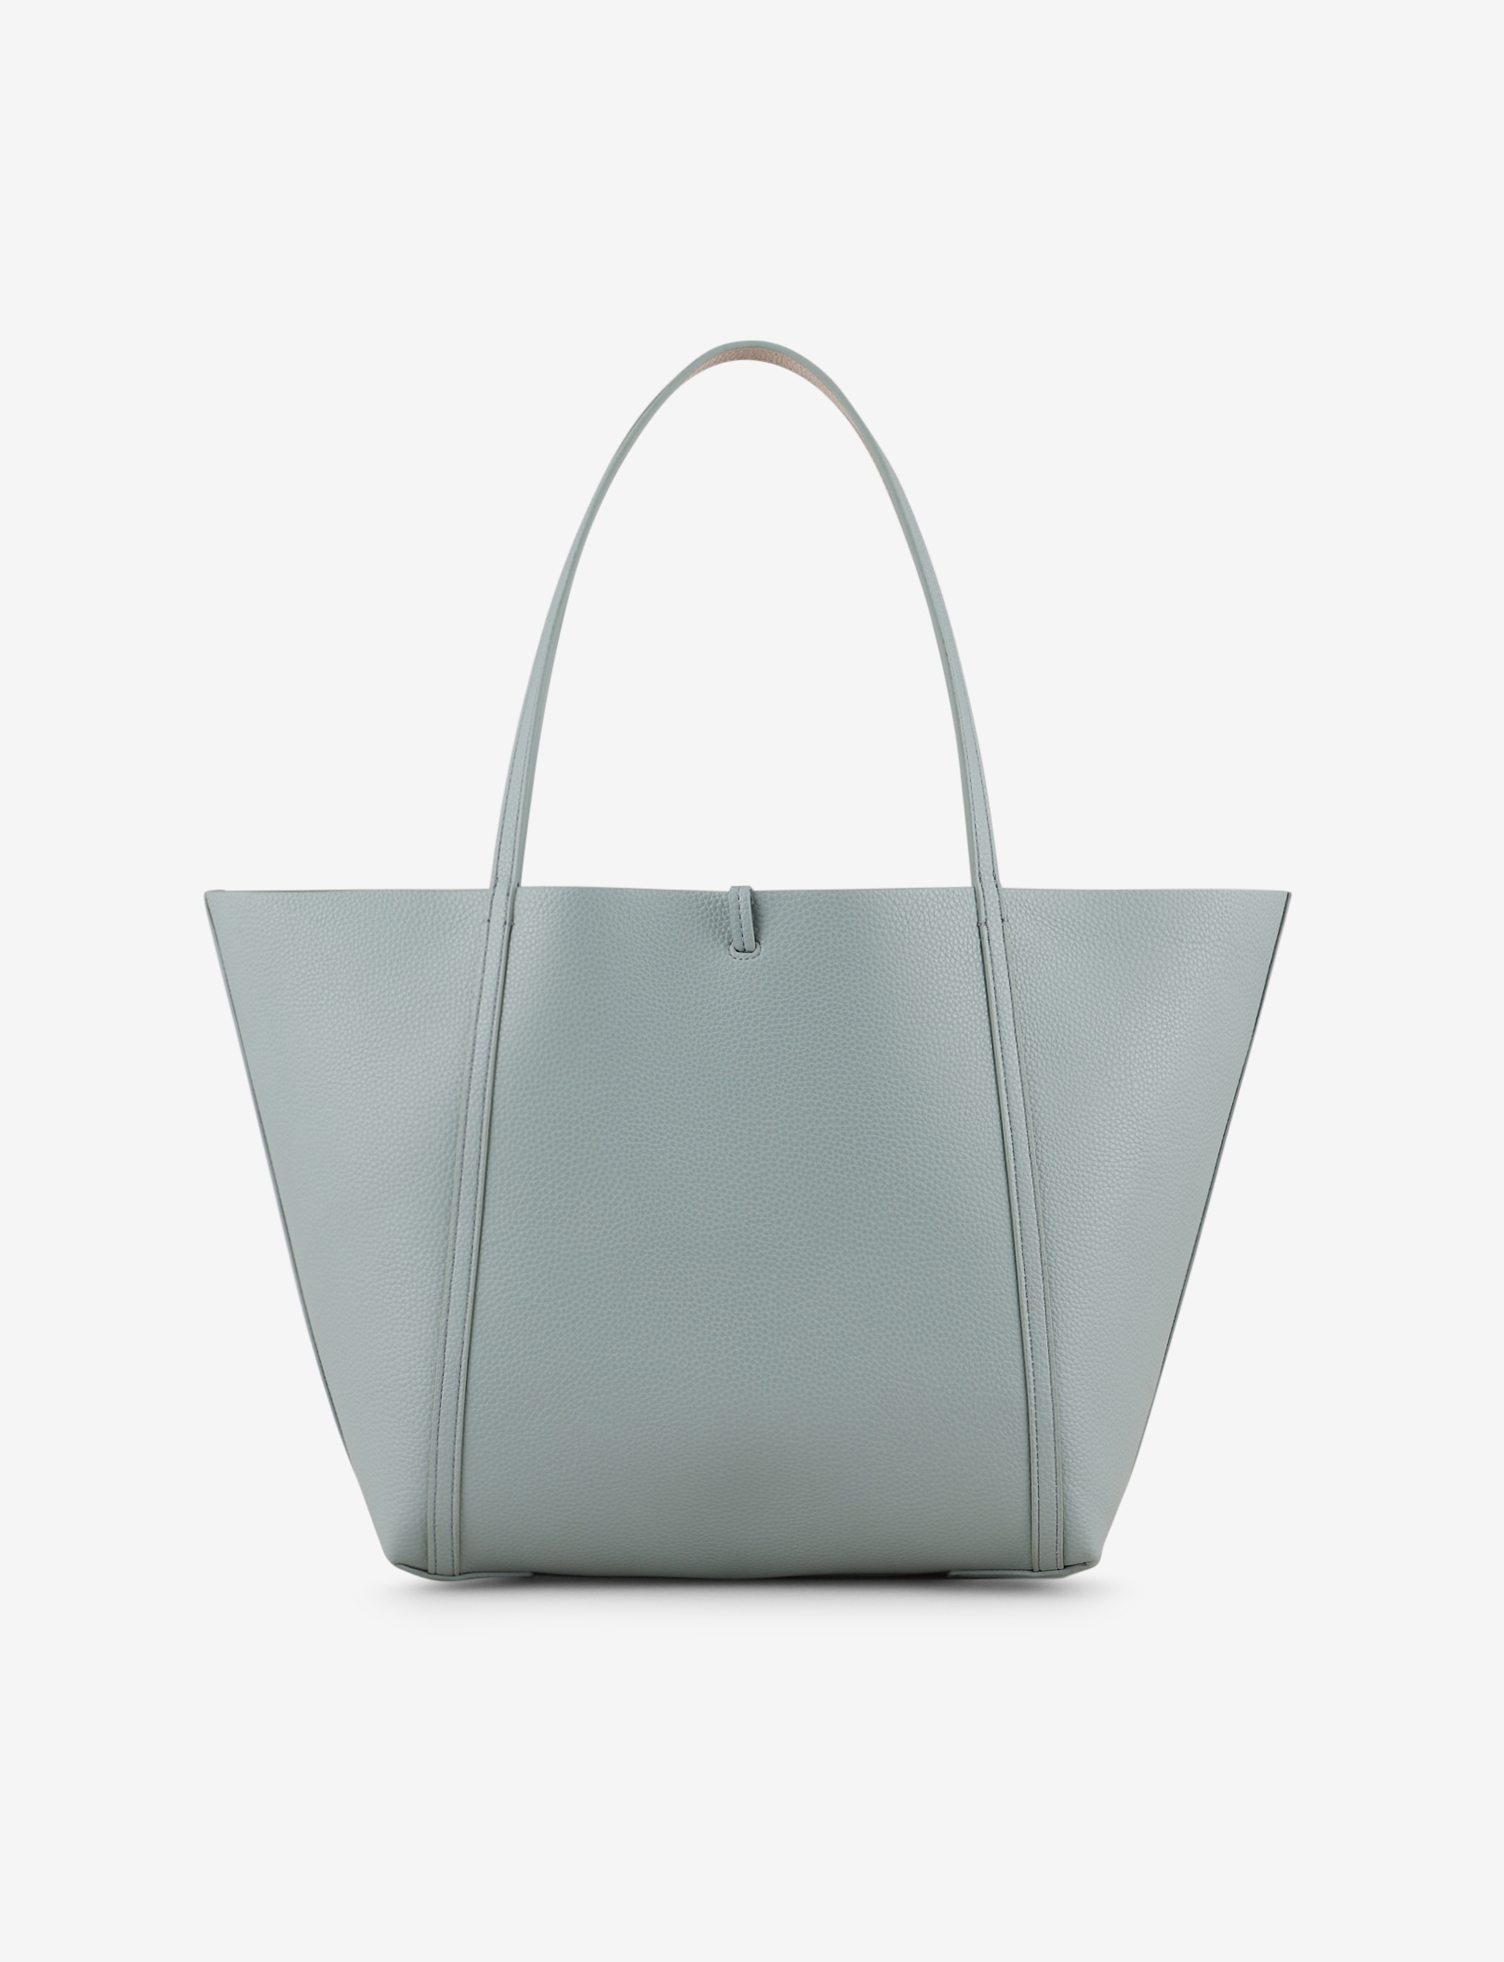 Armani GIORGIO ARMANI Suede Leather Shopping Bag women - Glamood Outlet